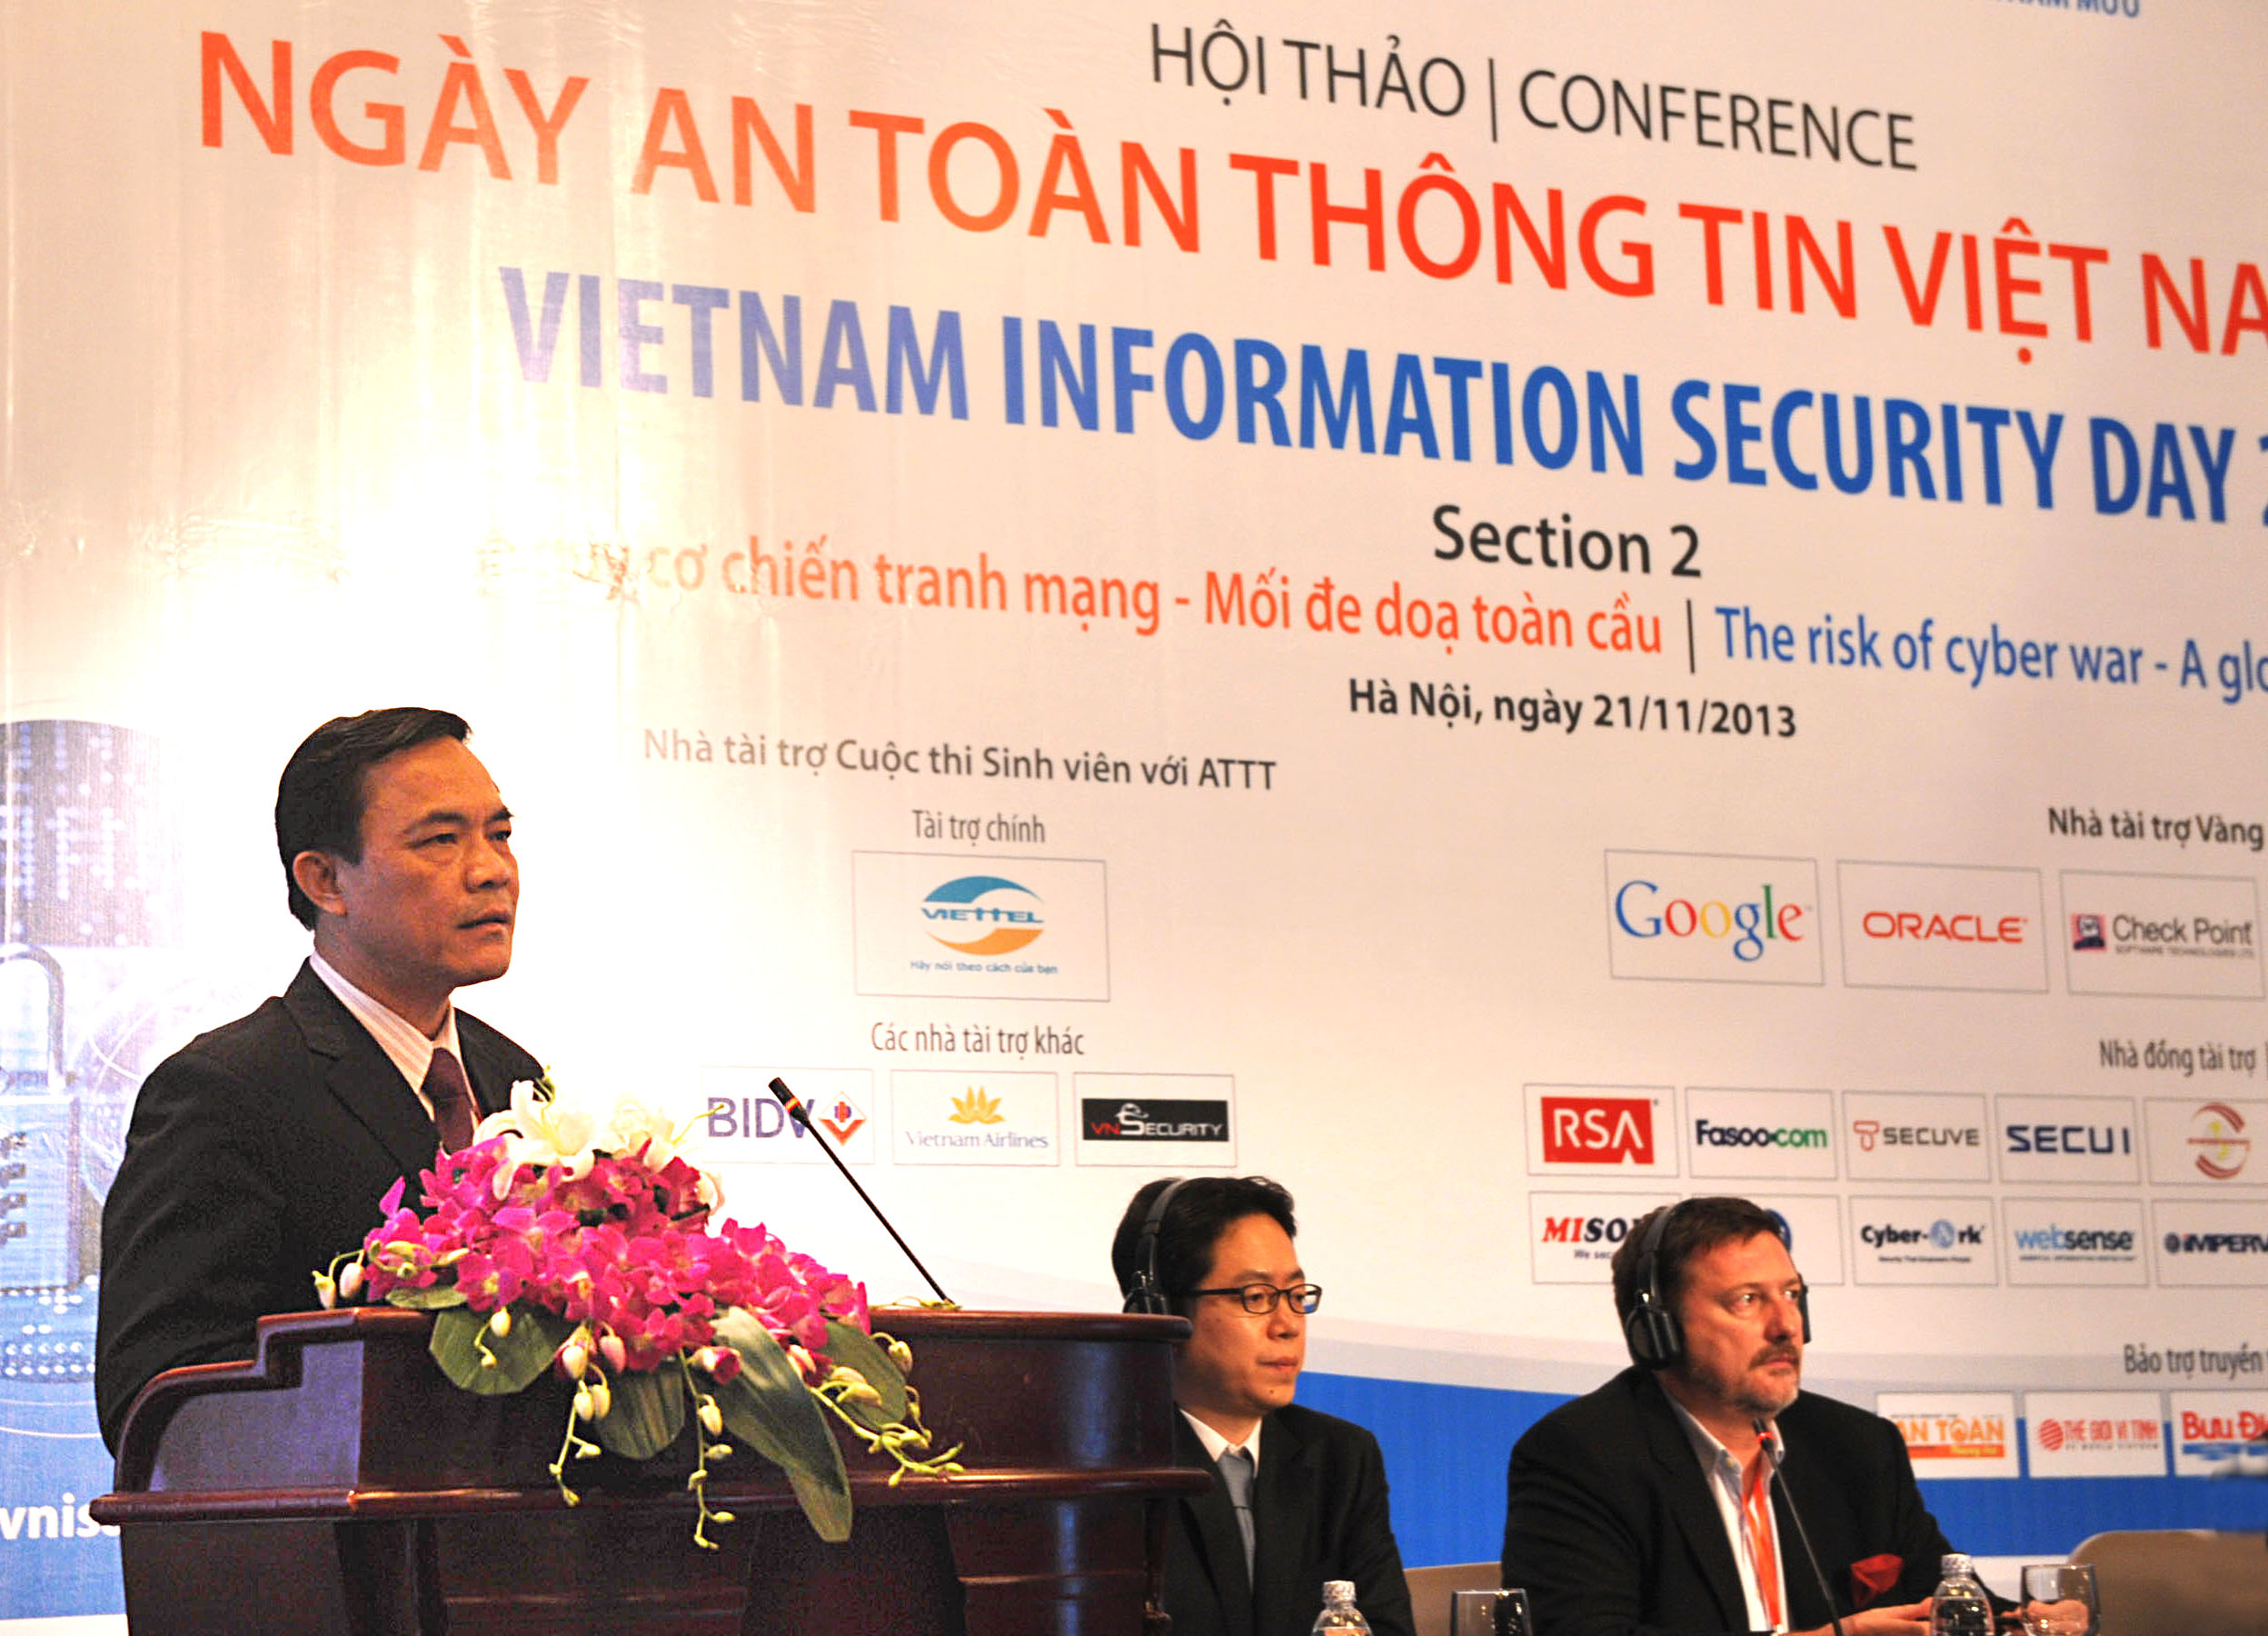 Đồng chí Đặng Vũ Sơn, Phó trưởng ban Ban Cơ yếu Chính phủ kiêm Giám đốc Học viện Kỹ thuật mật mã phát biểu tại Hội thảo